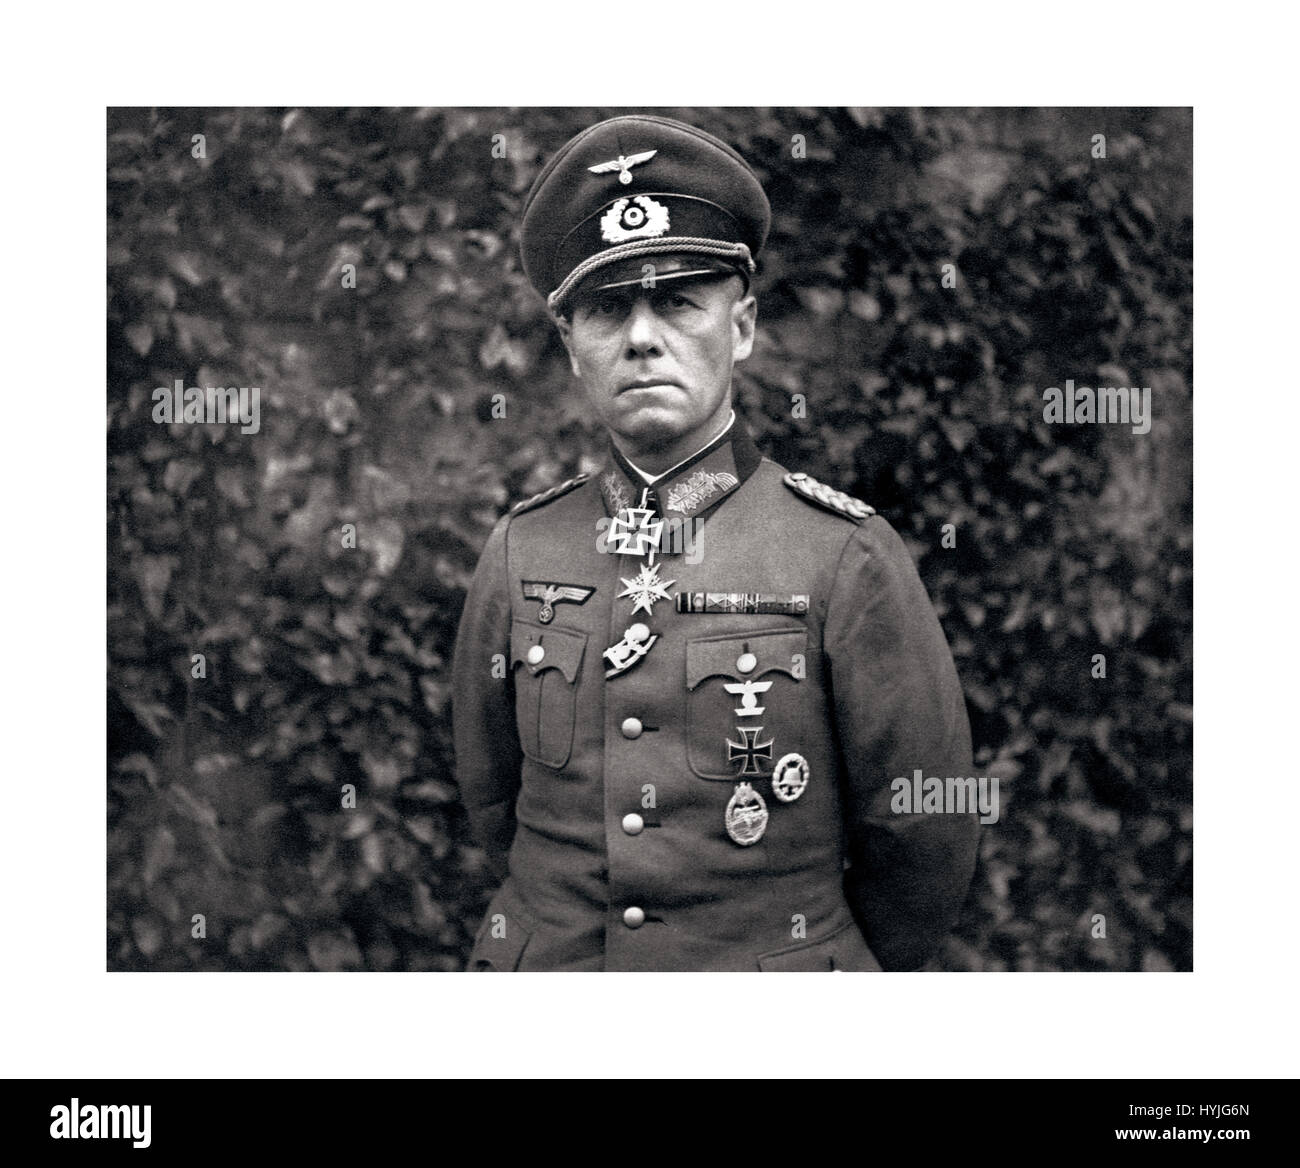 Maresciallo di Campo ROMMEL Guerra Mondiale 2: Erwin Rommel in uniforme che indossa il tedesco della croce di ferro medaglia nella foto poco prima della sua "suicide' Ott 1944 ha servito come maresciallo di campo in la Wehrmacht della Germania nazista durante la Seconda Guerra Mondiale. Considerata da molti la lotta con onore nella faccia del nazismo Foto Stock